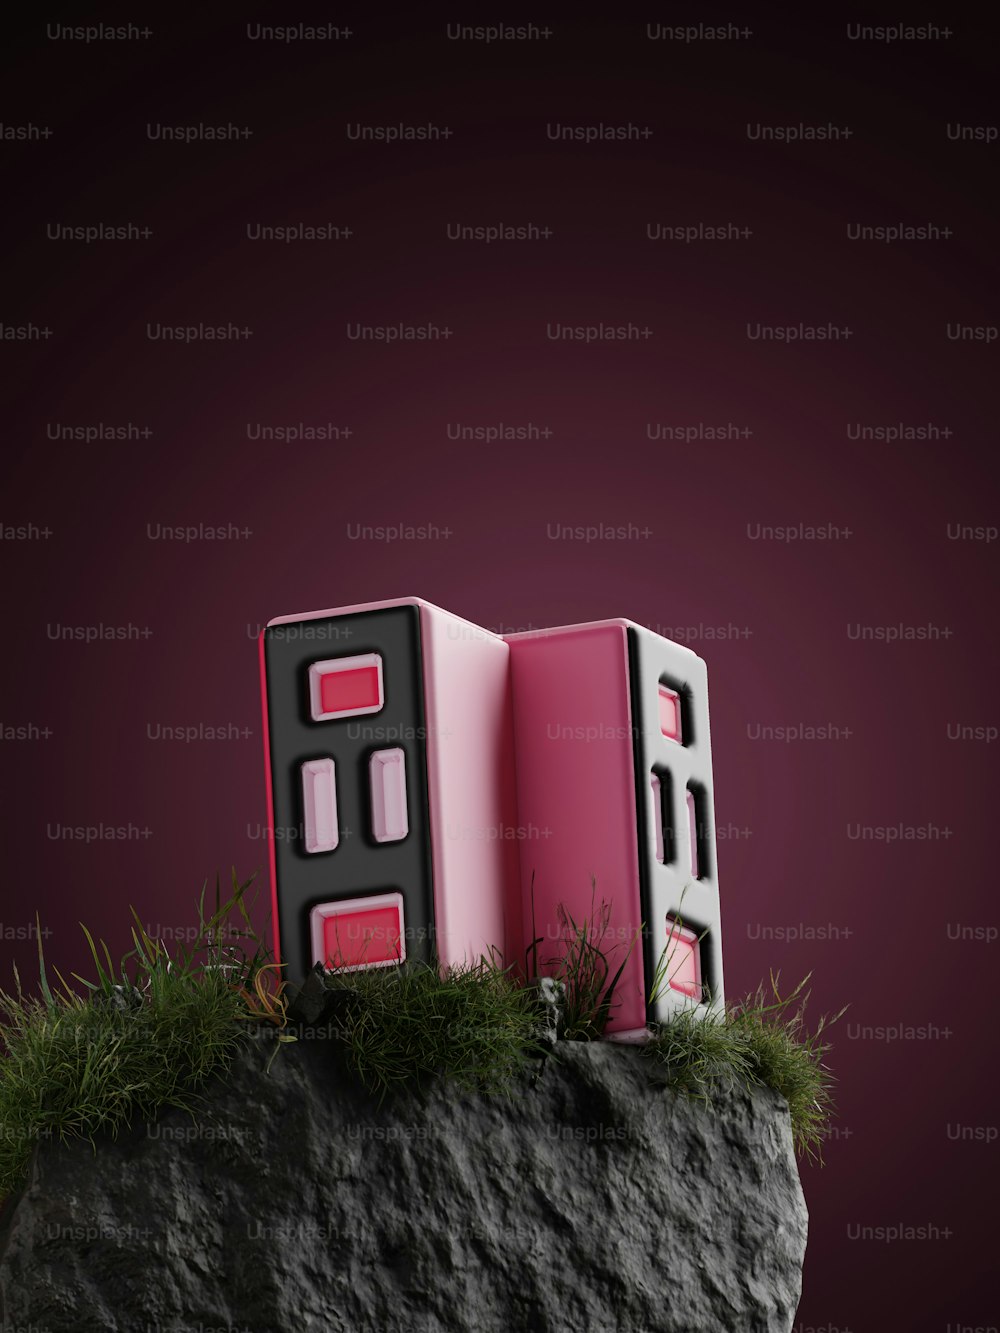 바위 위에 앉아 있는 분홍색 상자